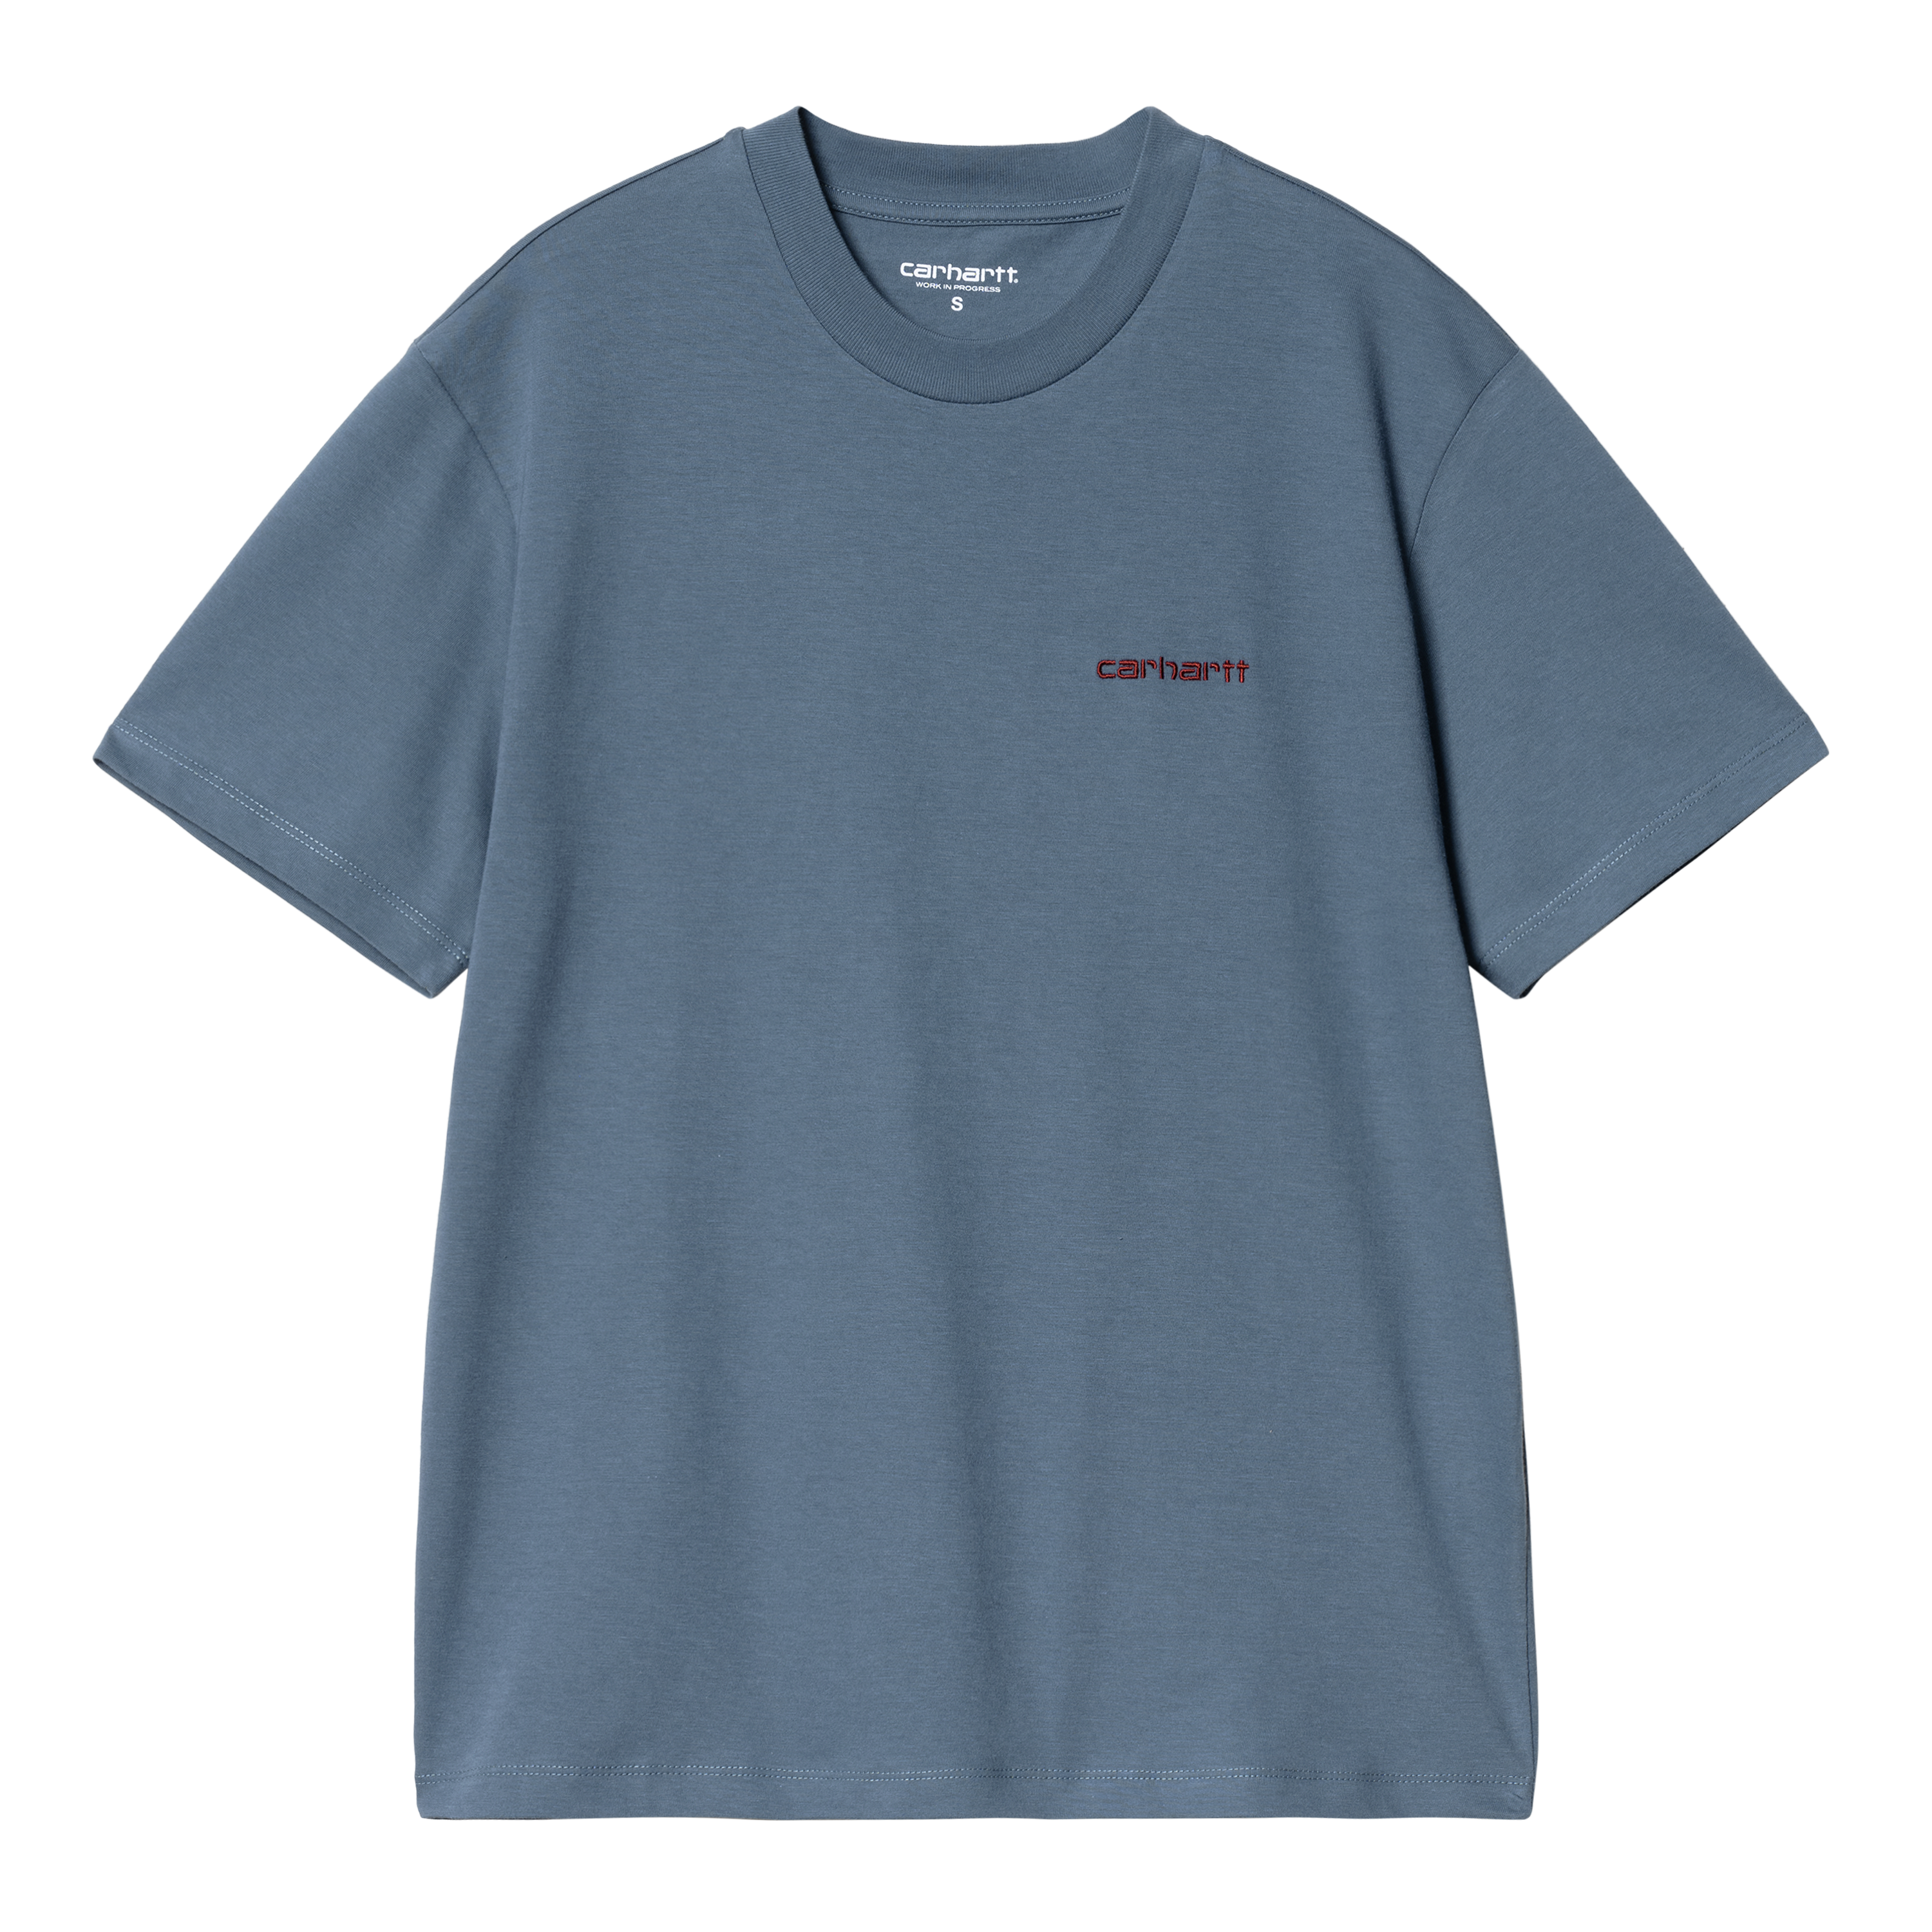 Carhartt WIP Women’s Short Sleeve Script Embroidery T-Shirt Bleu